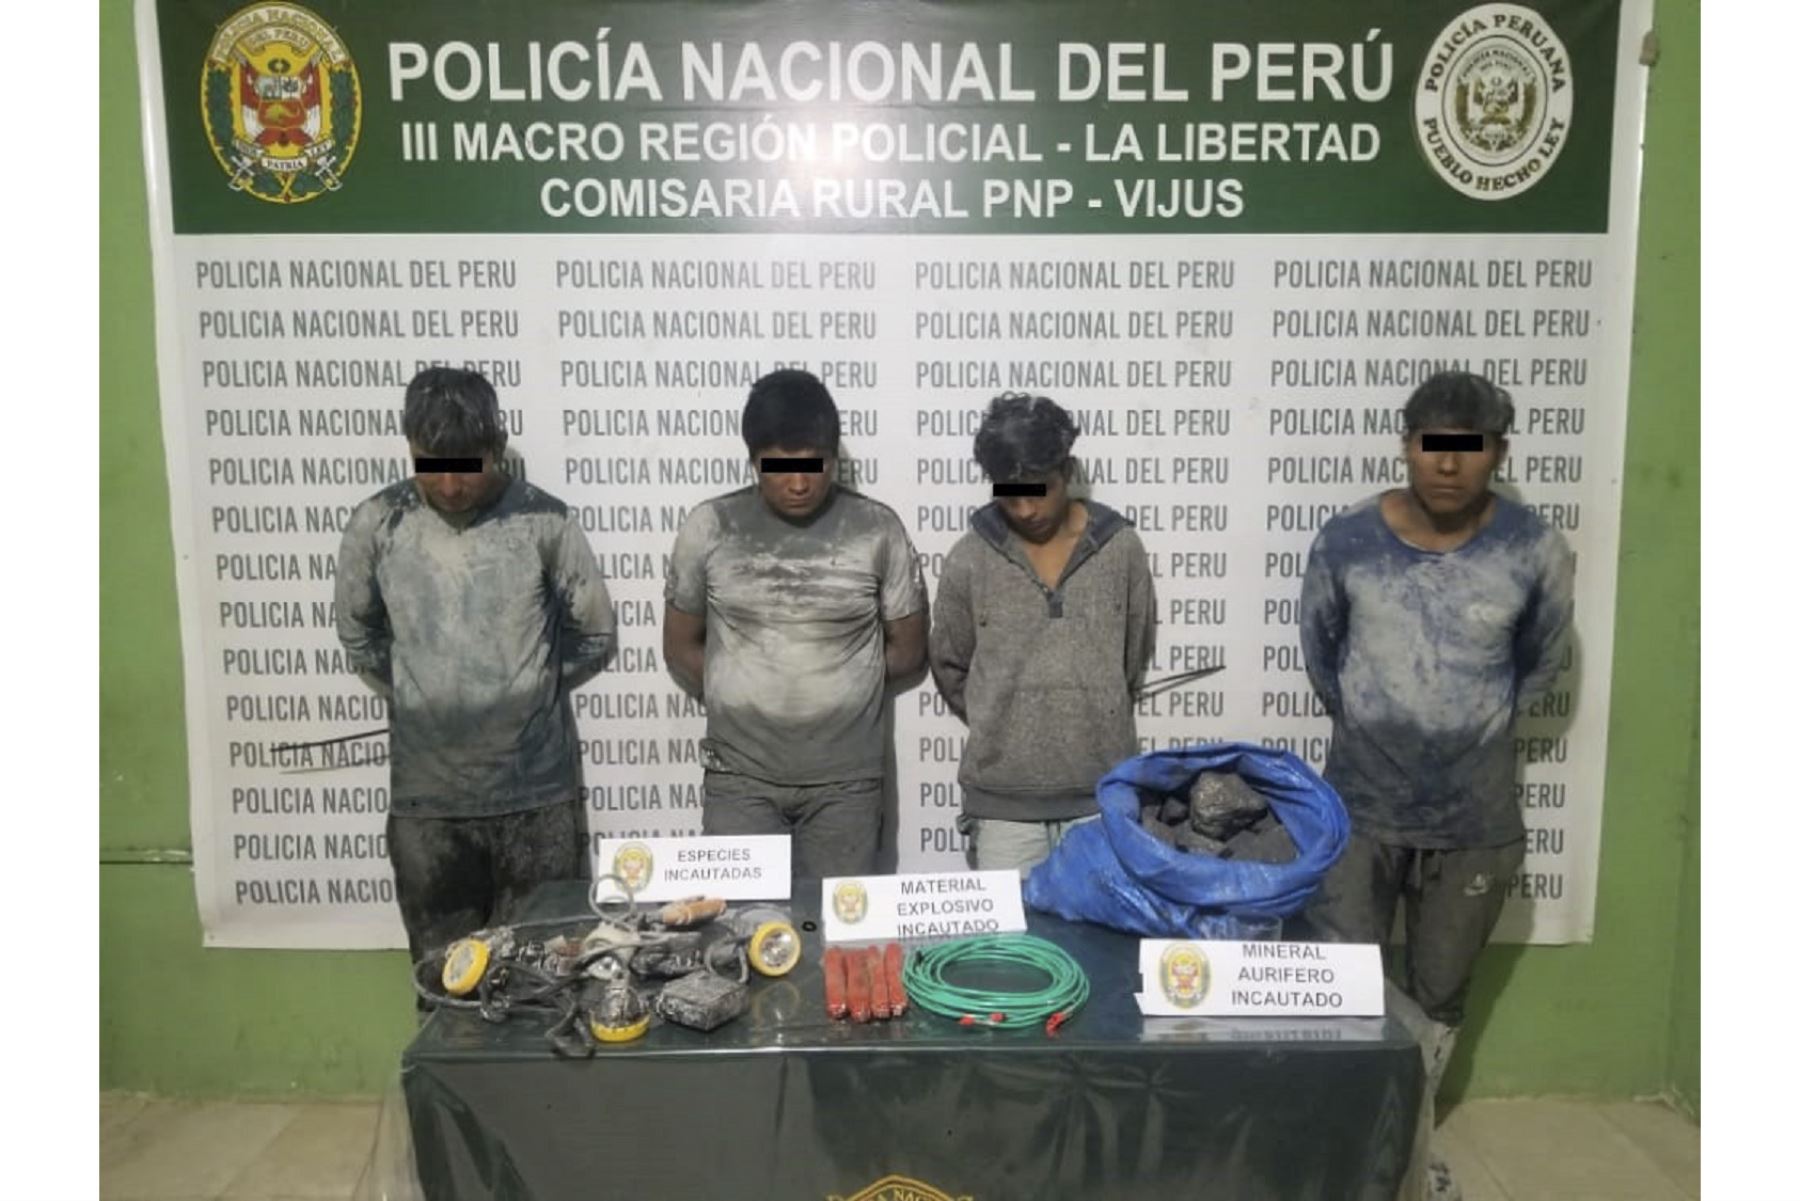 La Policía Nacional hizo detenciones por el presunto hurto de material aurífero en la provincia de Pataz, región La Libertad. Foto: ANDINA/Difusión